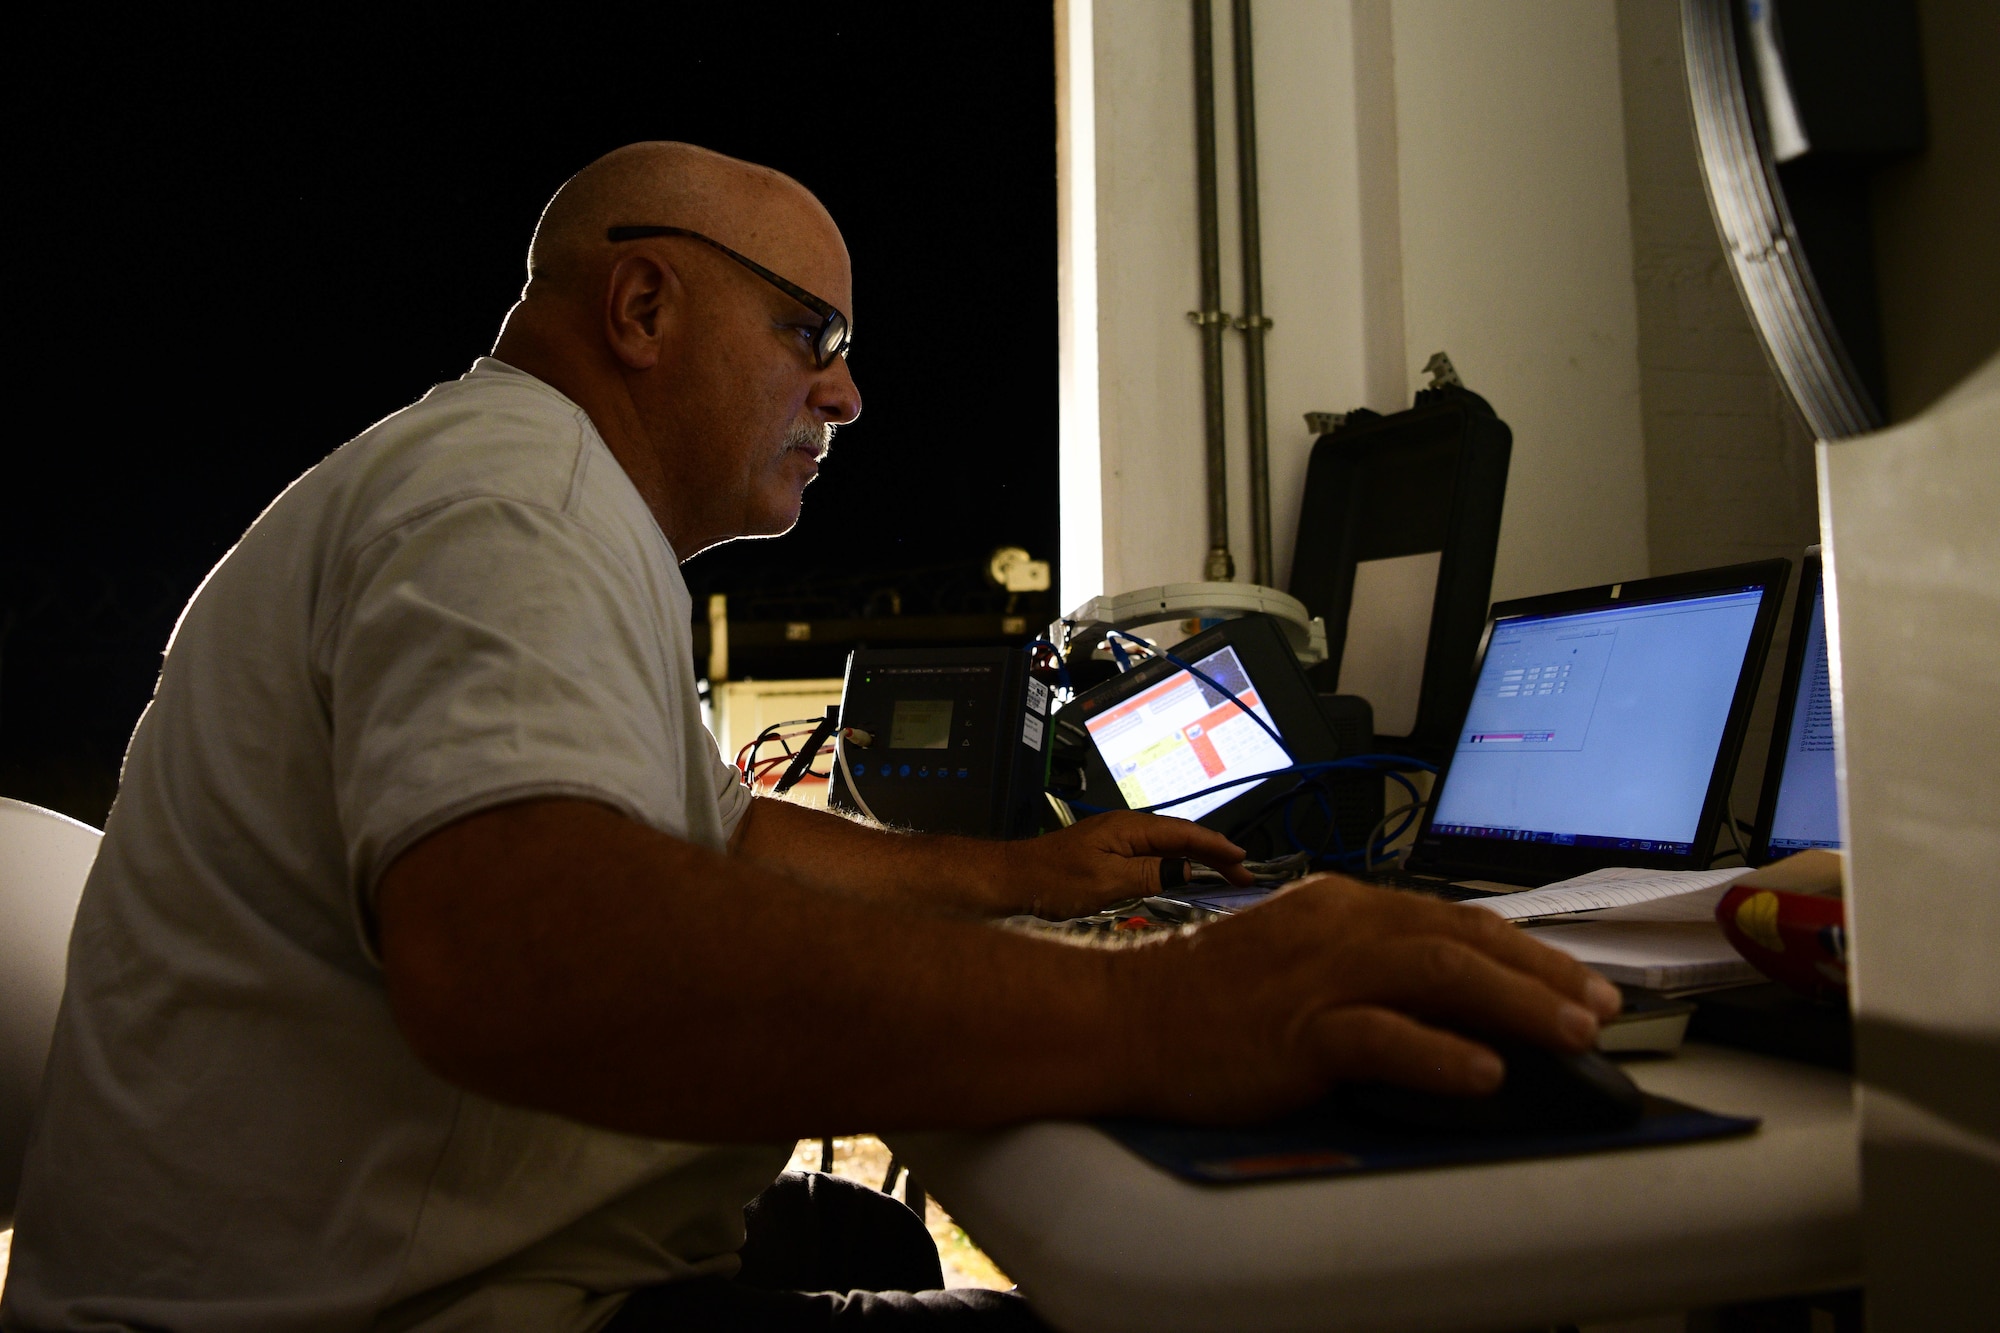 Man works on computer at desk